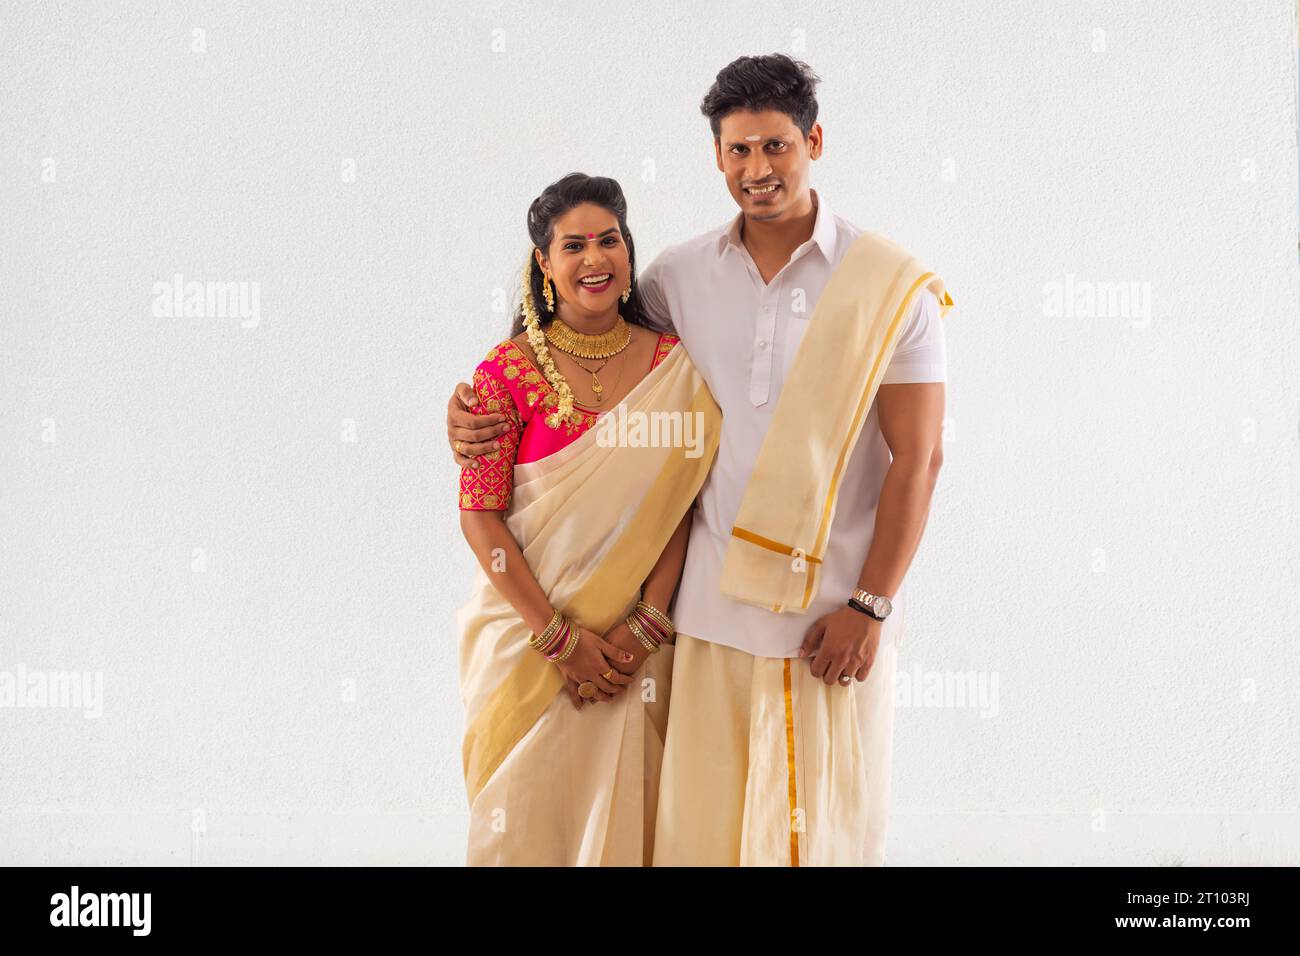 Ritratto coppia dell'India meridionale in piedi insieme su sfondo bianco Foto Stock